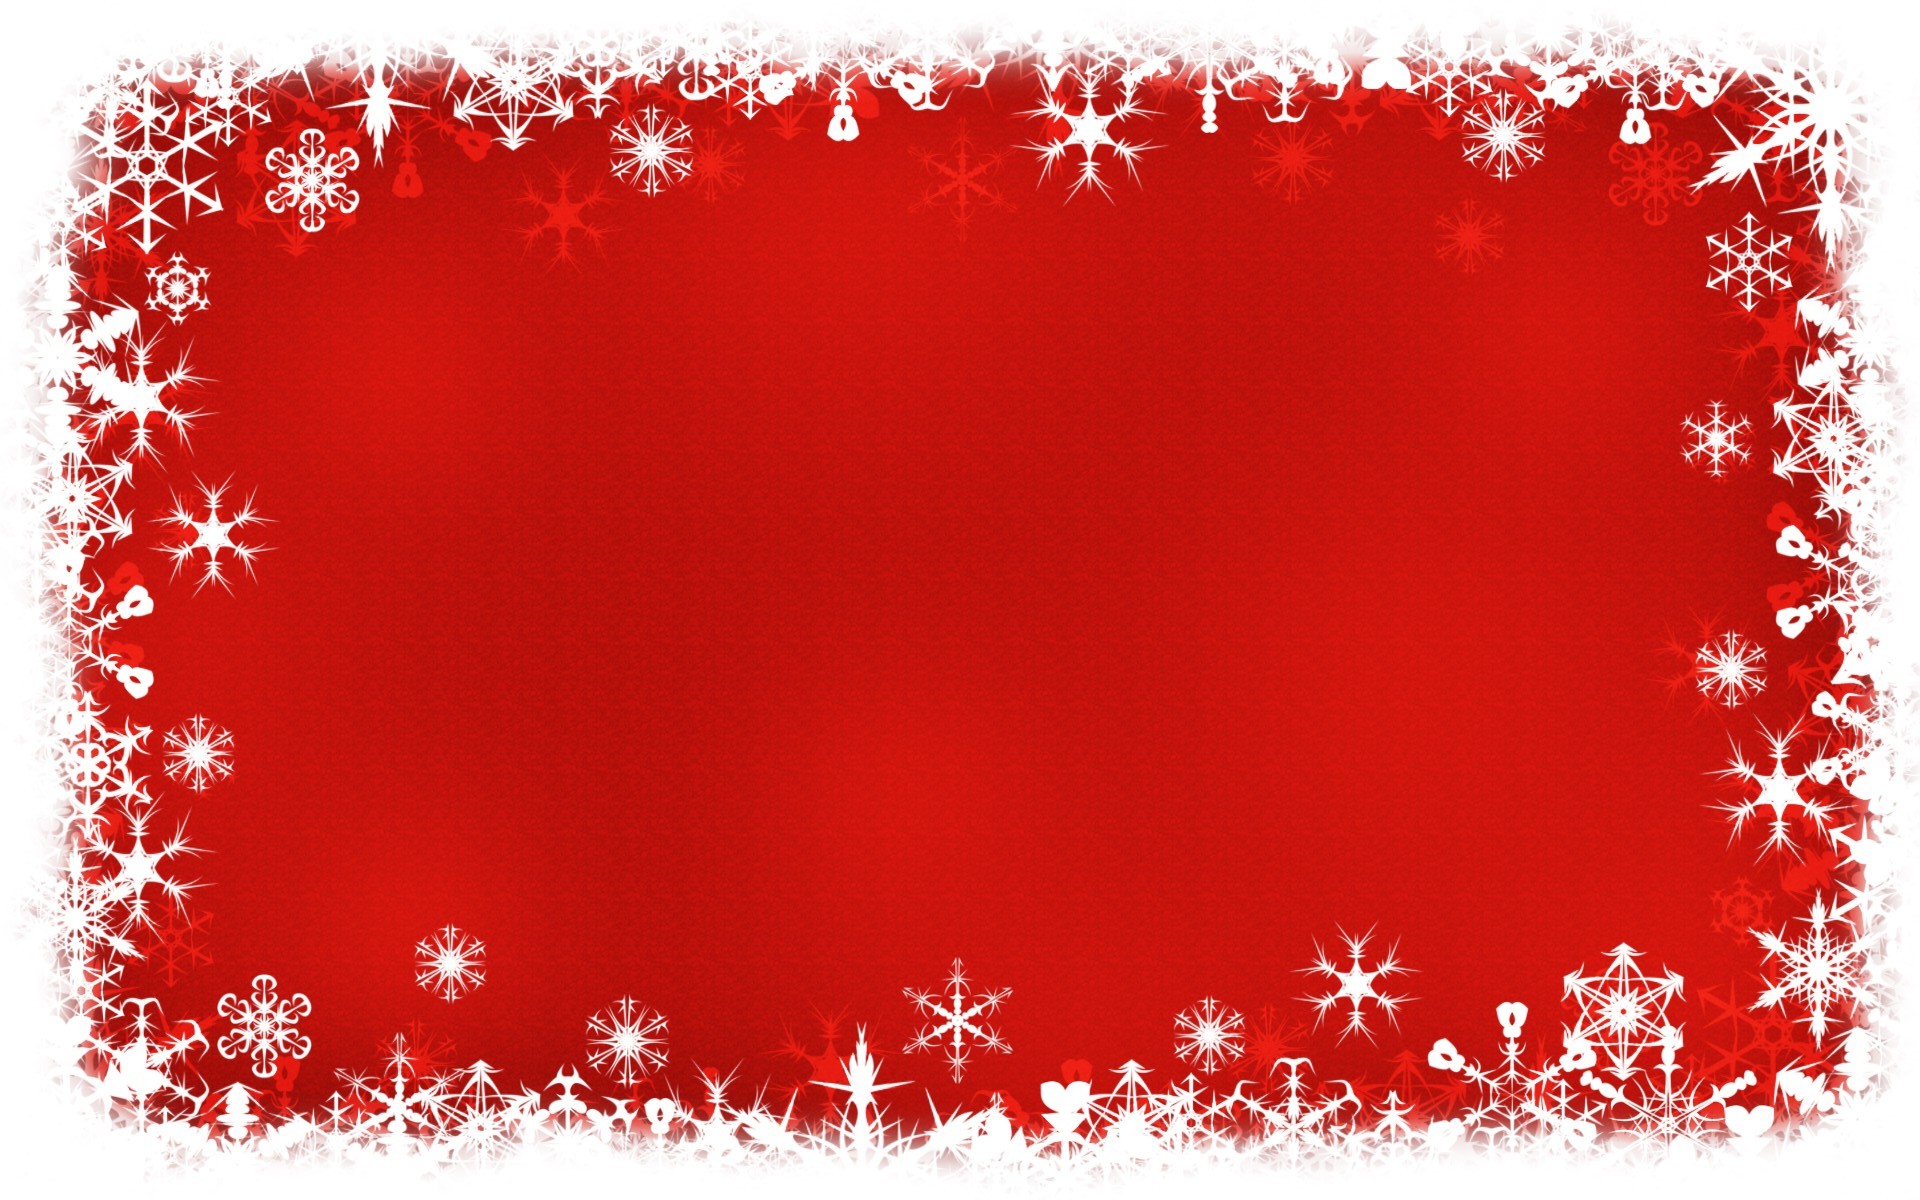 Hình nền Giáng sinh đỏ đậm mang lại cho gia đình bạn sự quyến rũ và bí ẩn. Với bầu không khí ấm áp và màu sắc sống động, cảm giác cuối năm sẽ trở nên thú vị và đáng nhớ hơn bao giờ hết. Hãy xem bức hình này để tận hưởng cảm giác yên bình nhưng cũng rực rỡ trong mùa lễ hội này.